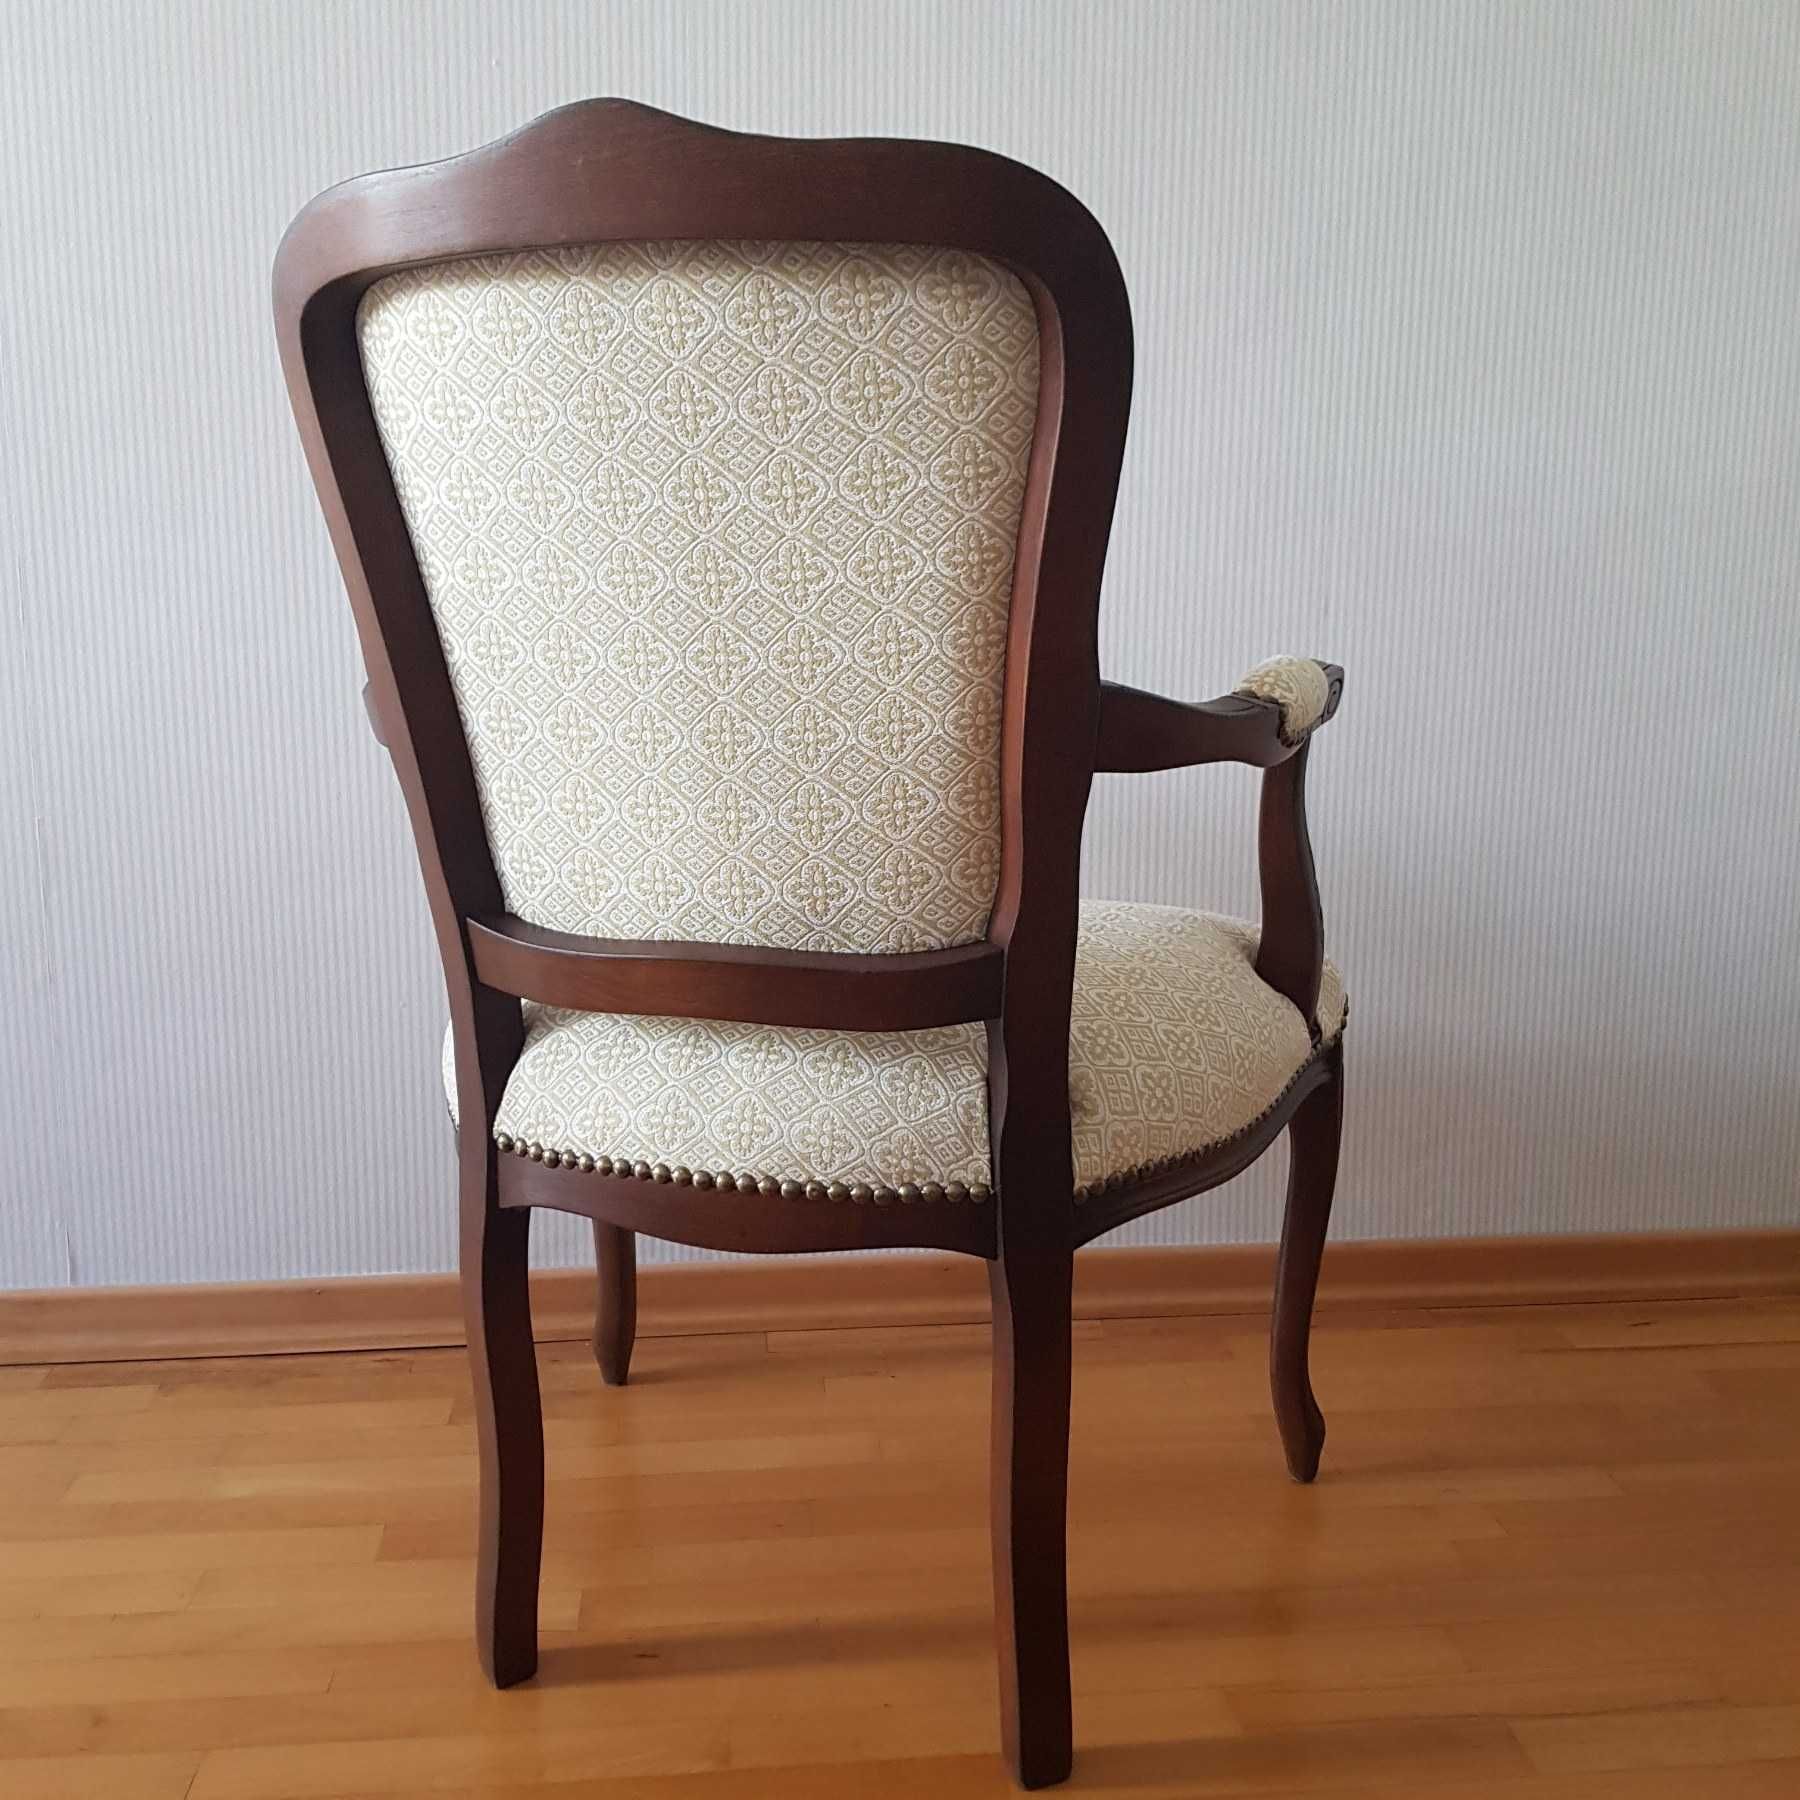 Четири еднакви реставрирани кресла в стил ЛУИ XV